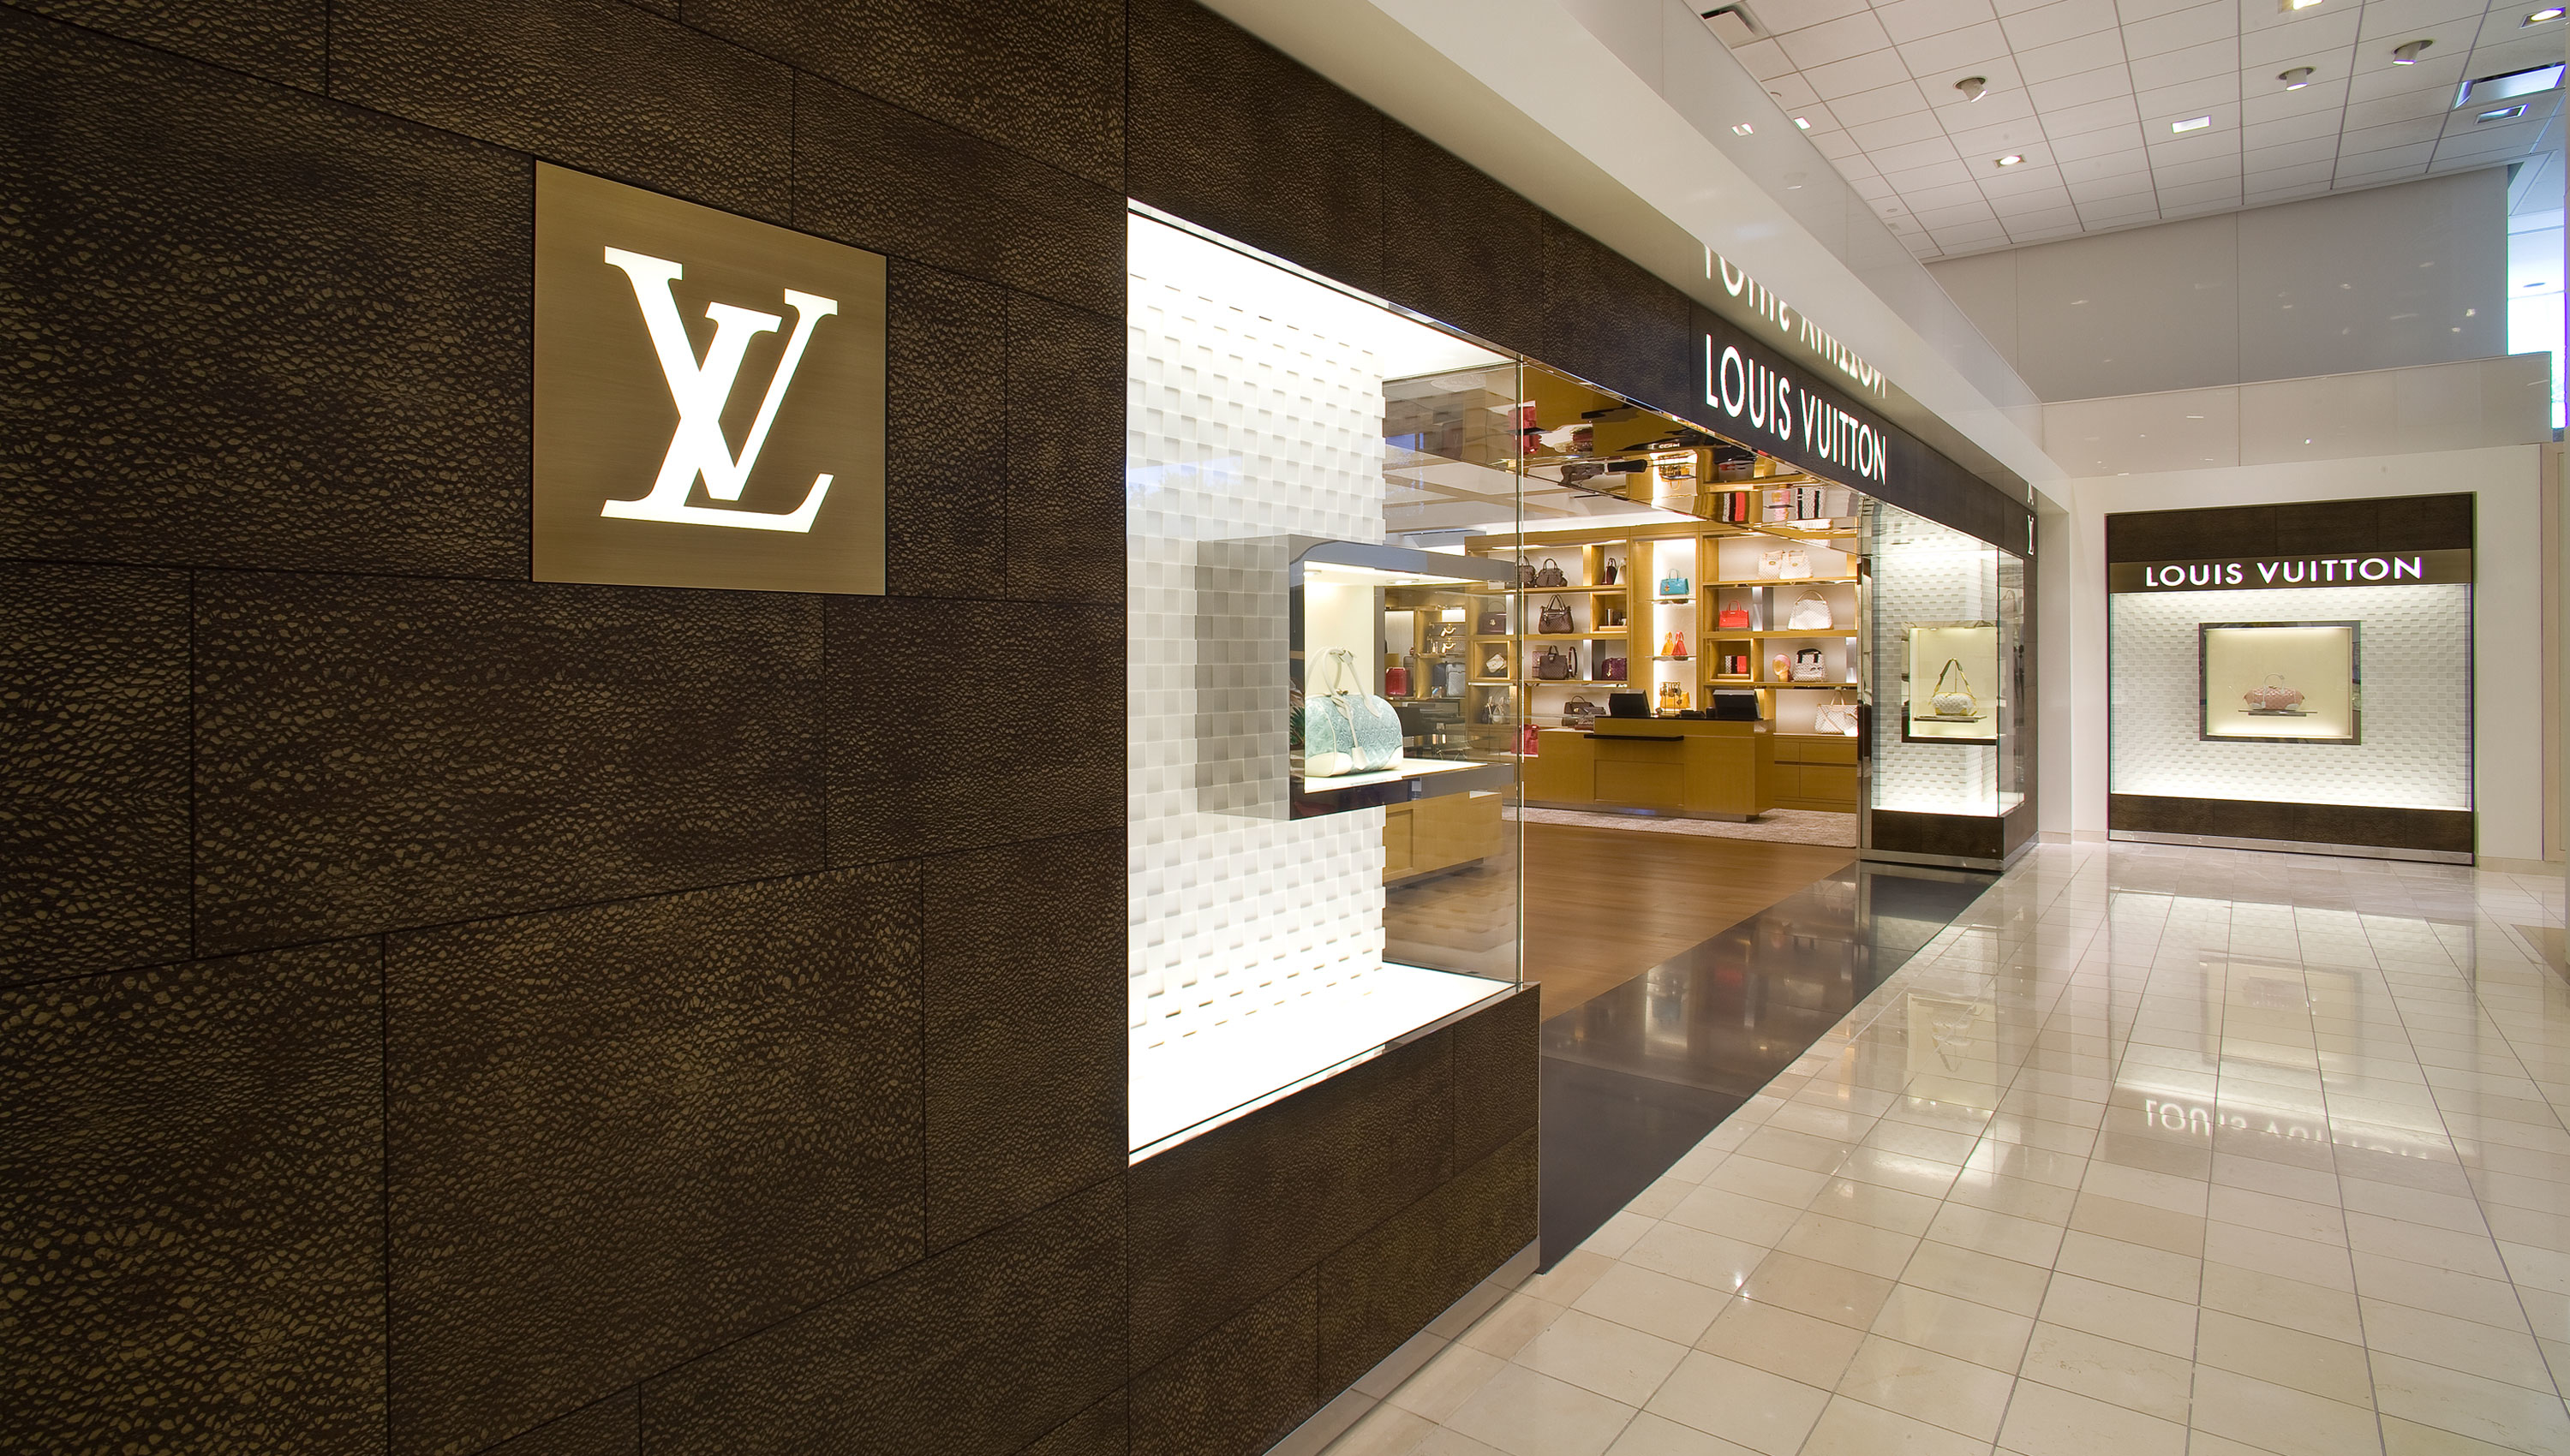 Louis Vuitton Houston Neiman Marcus Coupons near me in Houston, TX 77056 | 8coupons